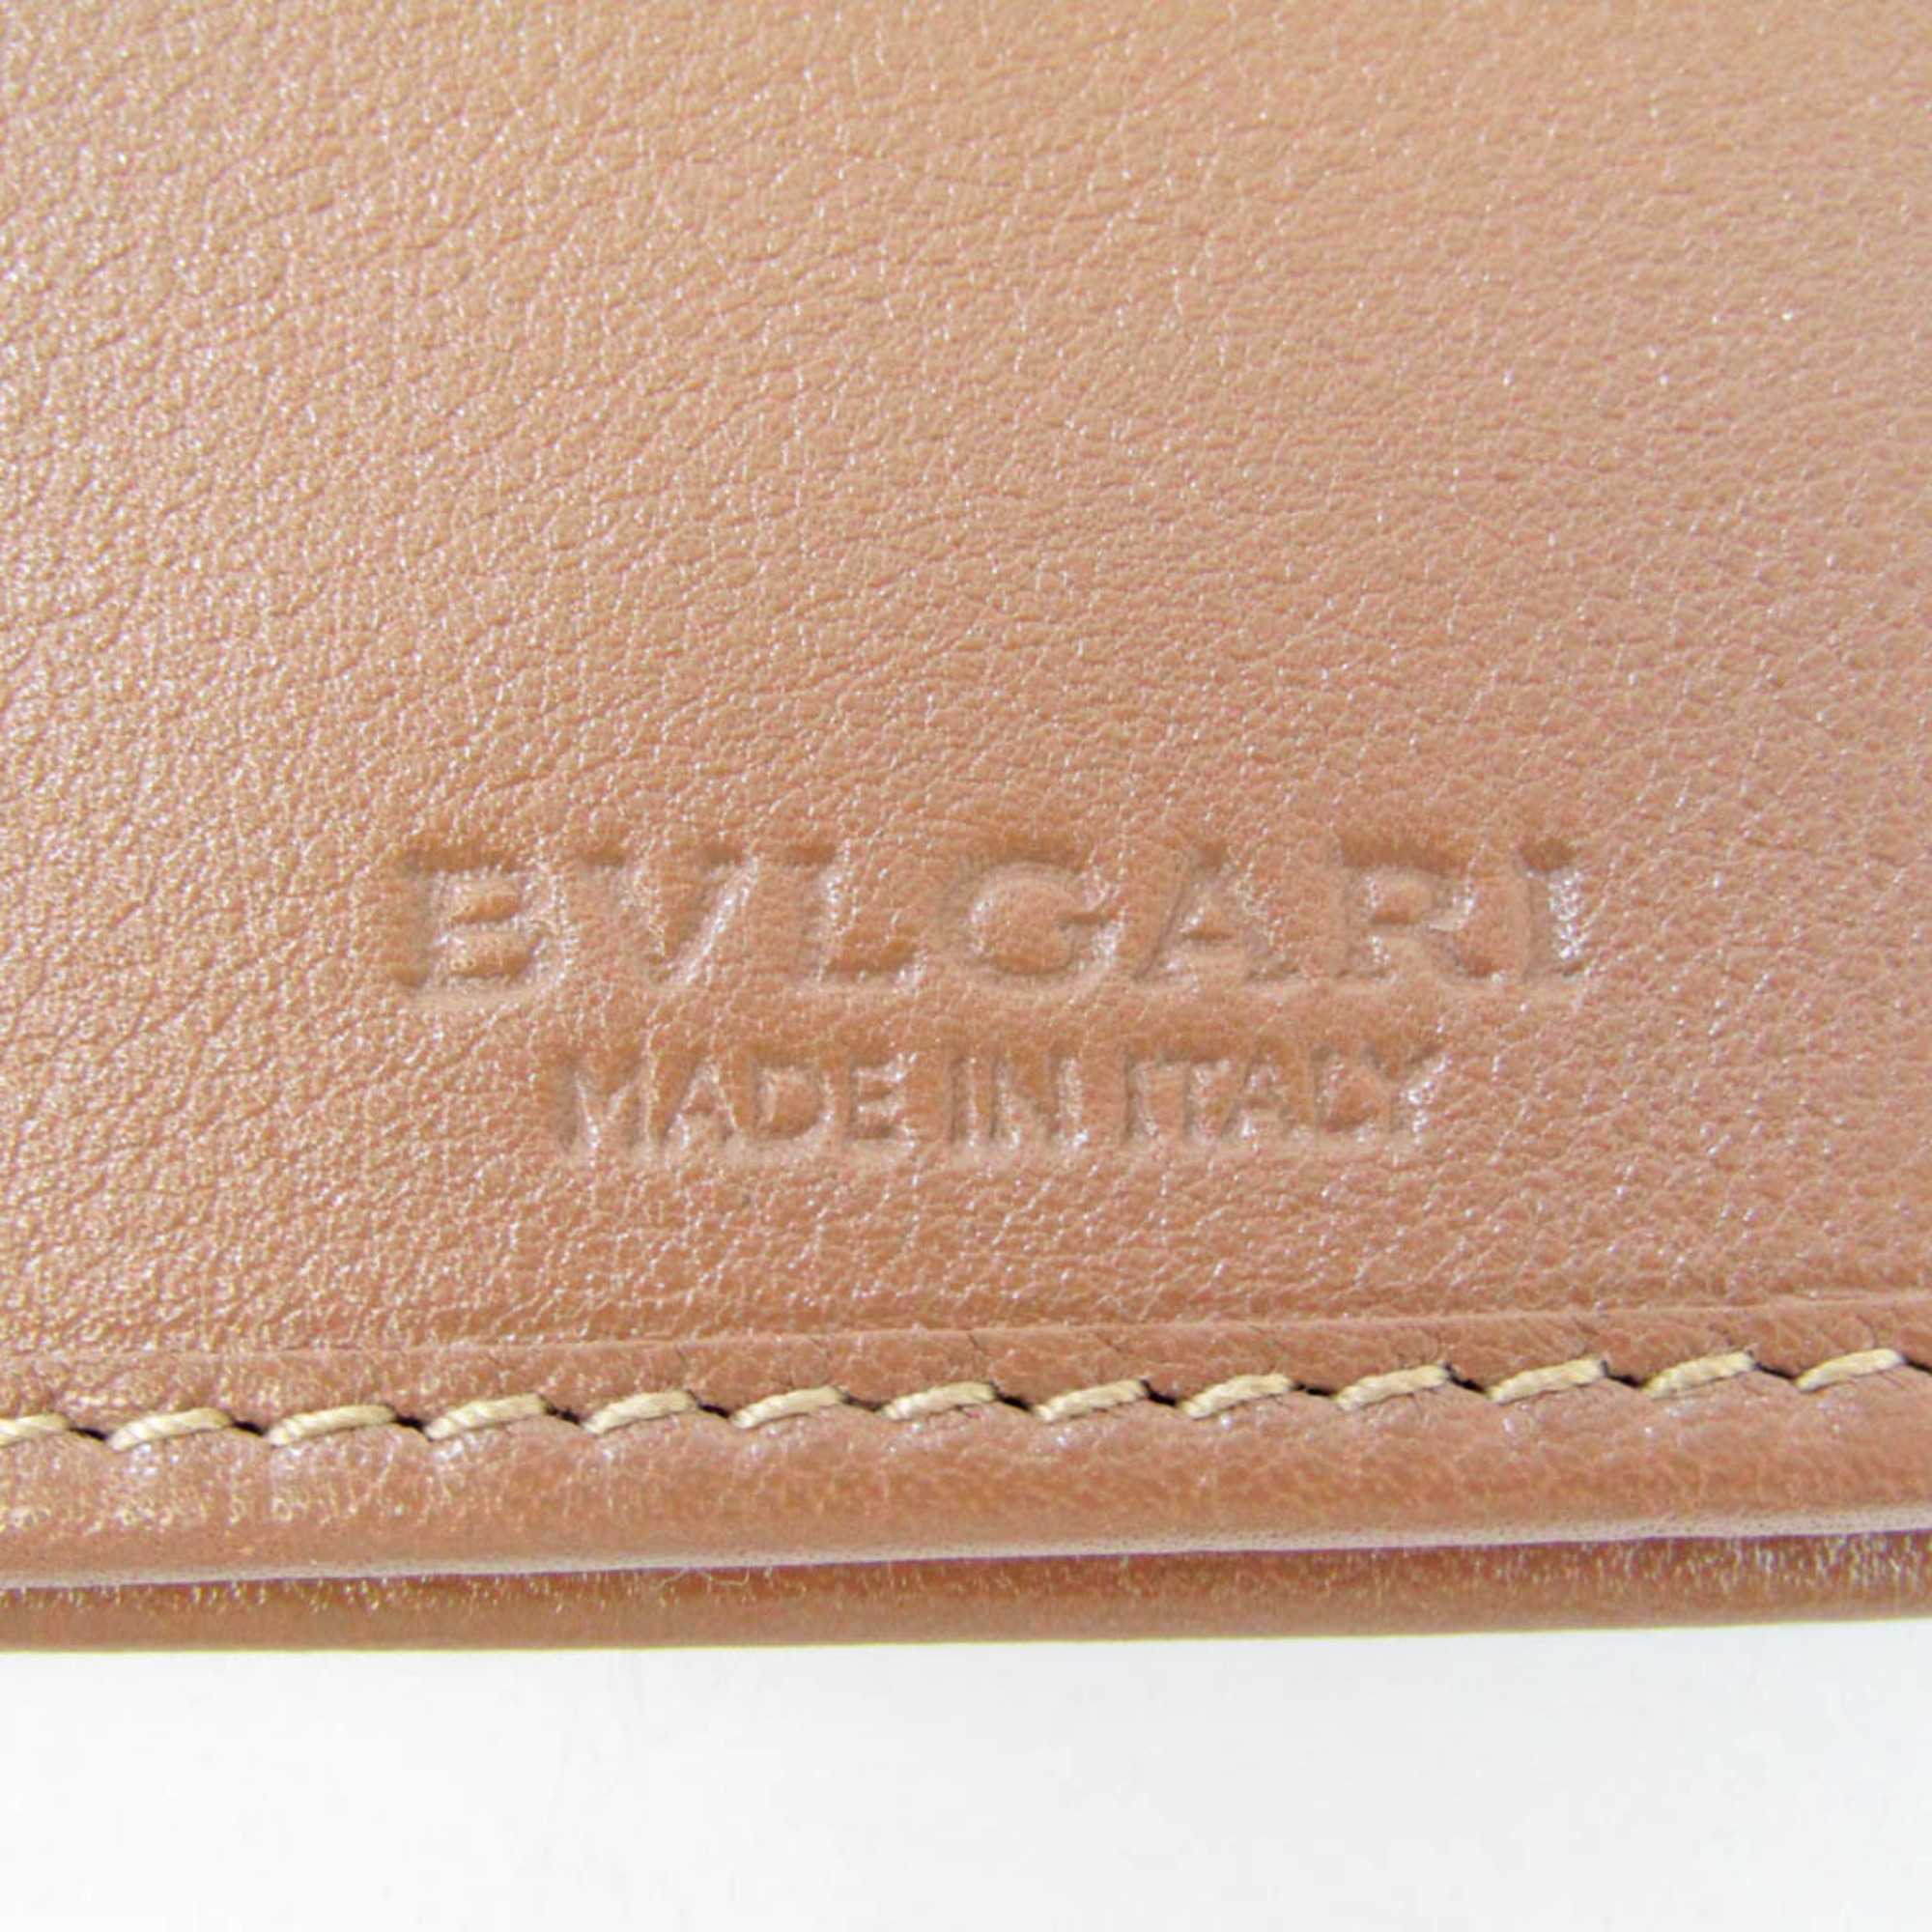 Bvlgari Bvlgari Bvlgari 33385 Women's Leather Long Wallet (tri-fold) Light Brown